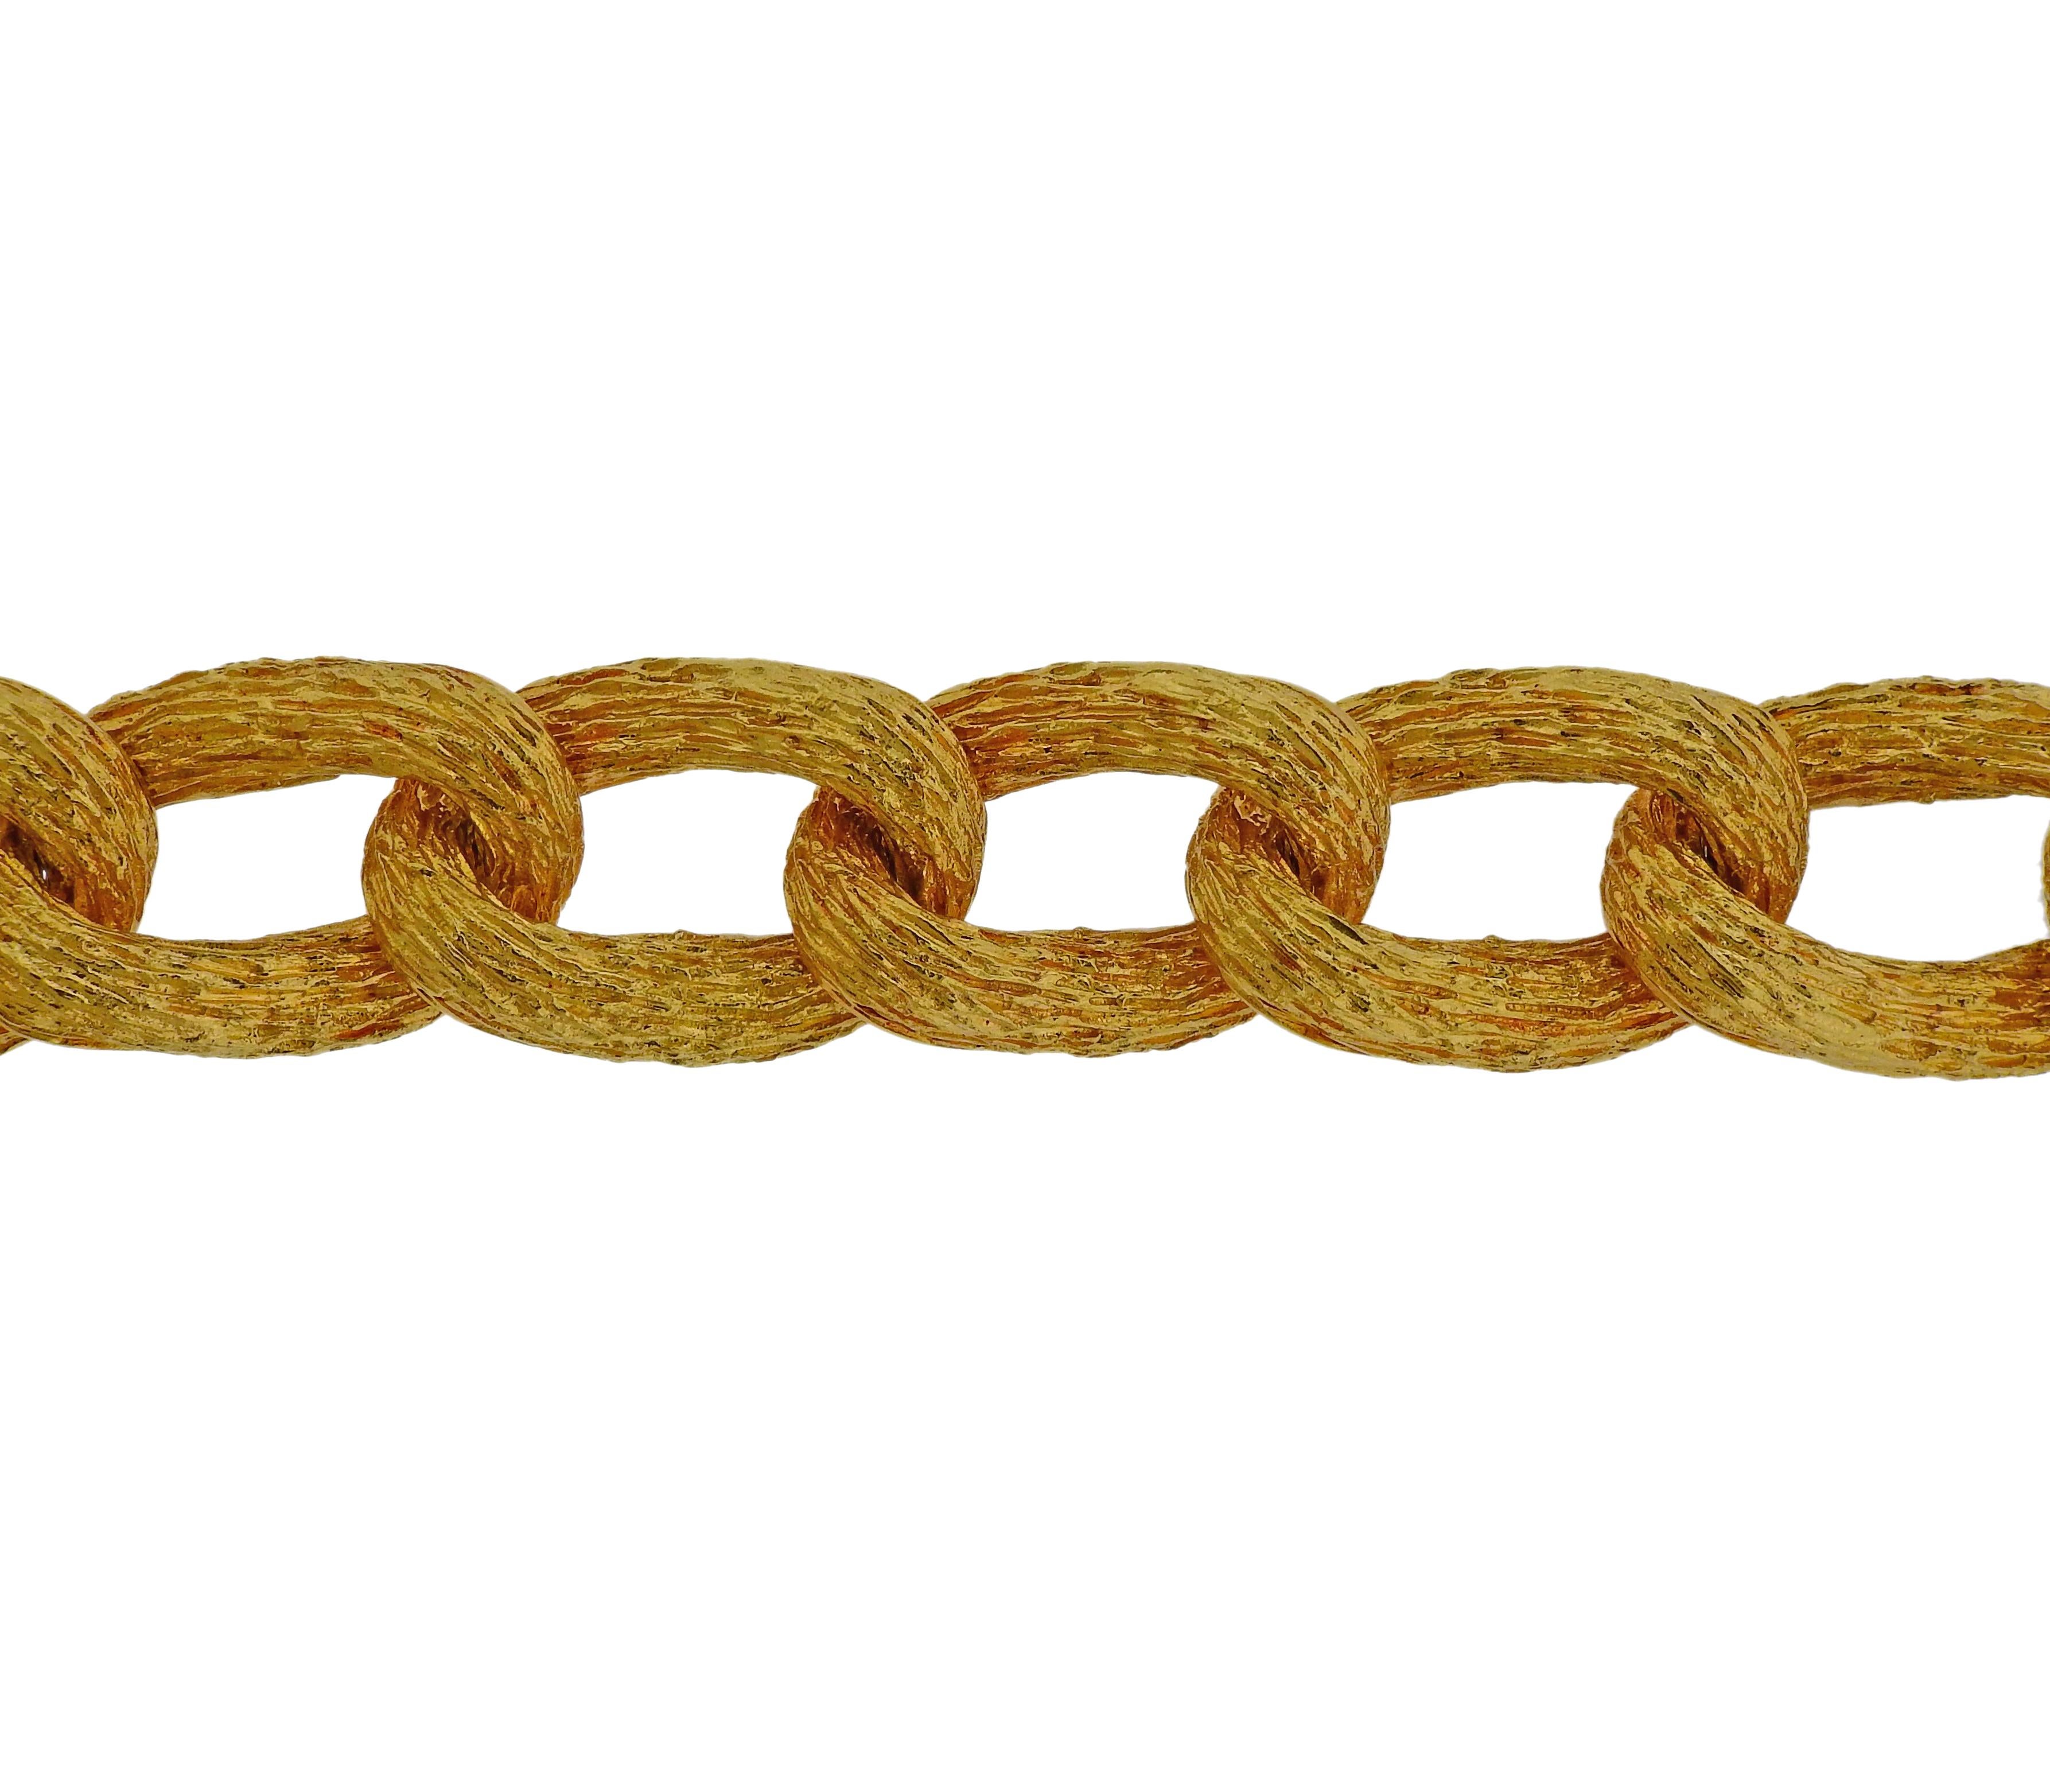 18k textured gold link bracelet by H. Stern. Bracelet measures  8